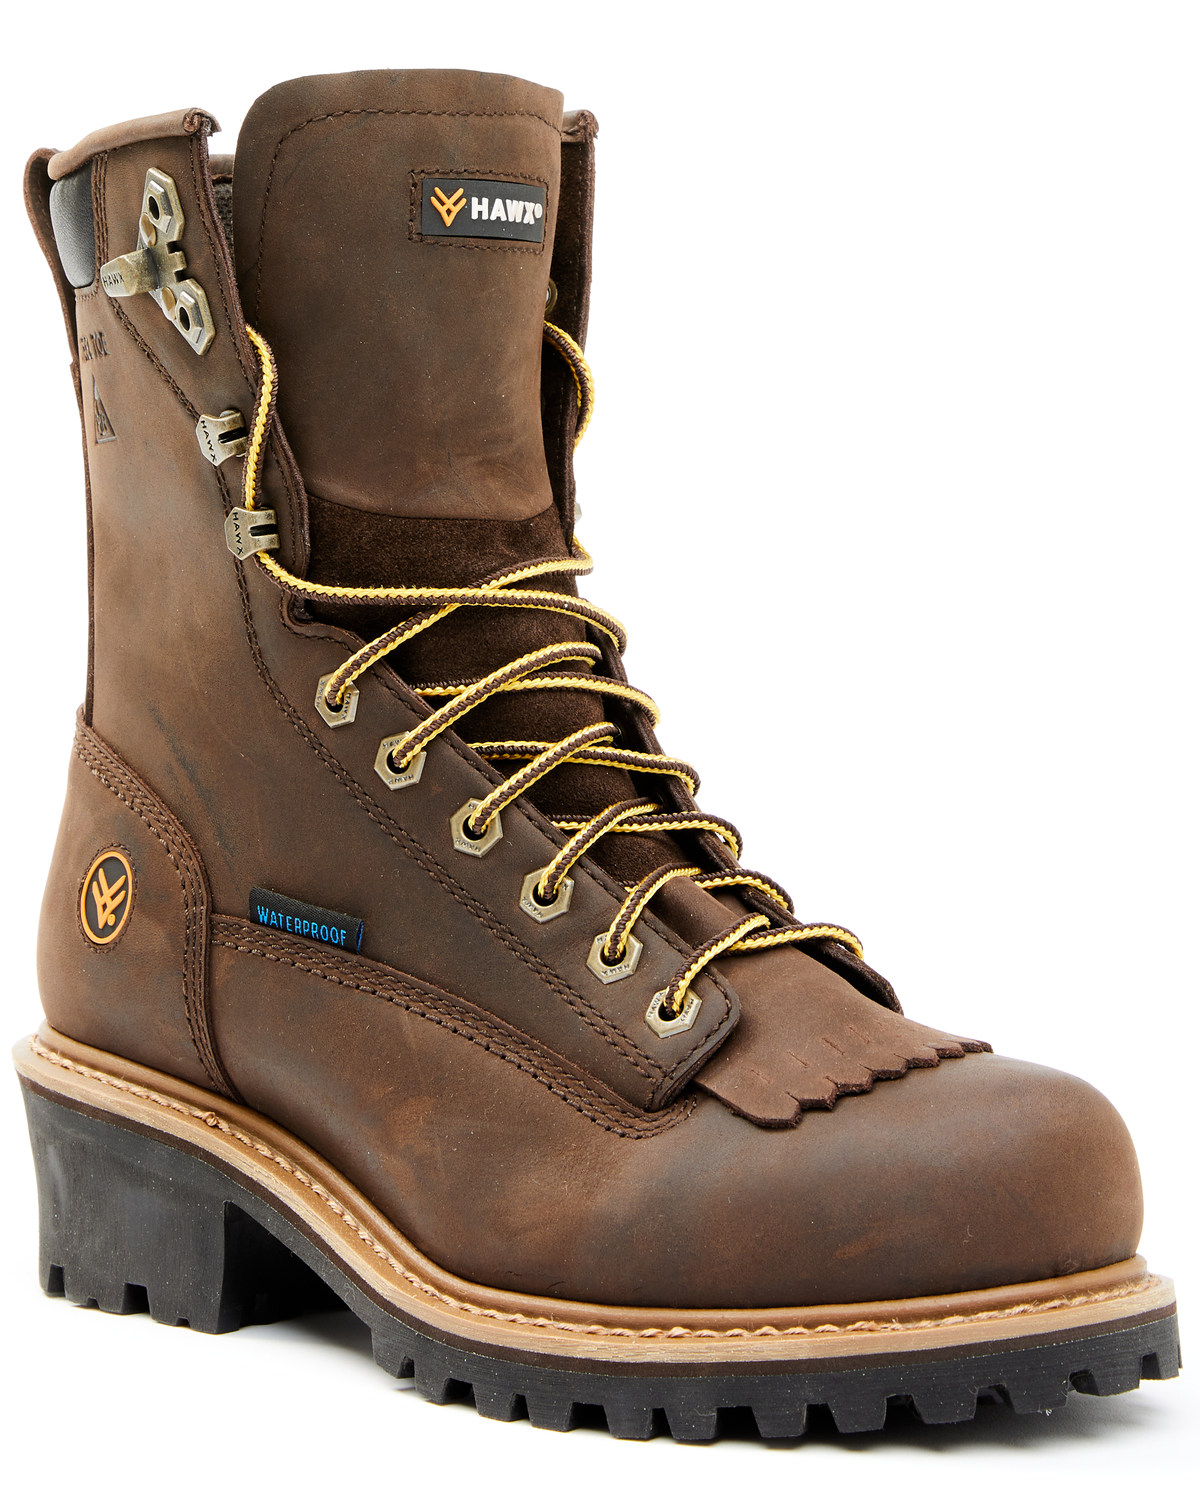 Hawx Men's 8" Waterproof Logger Boots - Steel Toe